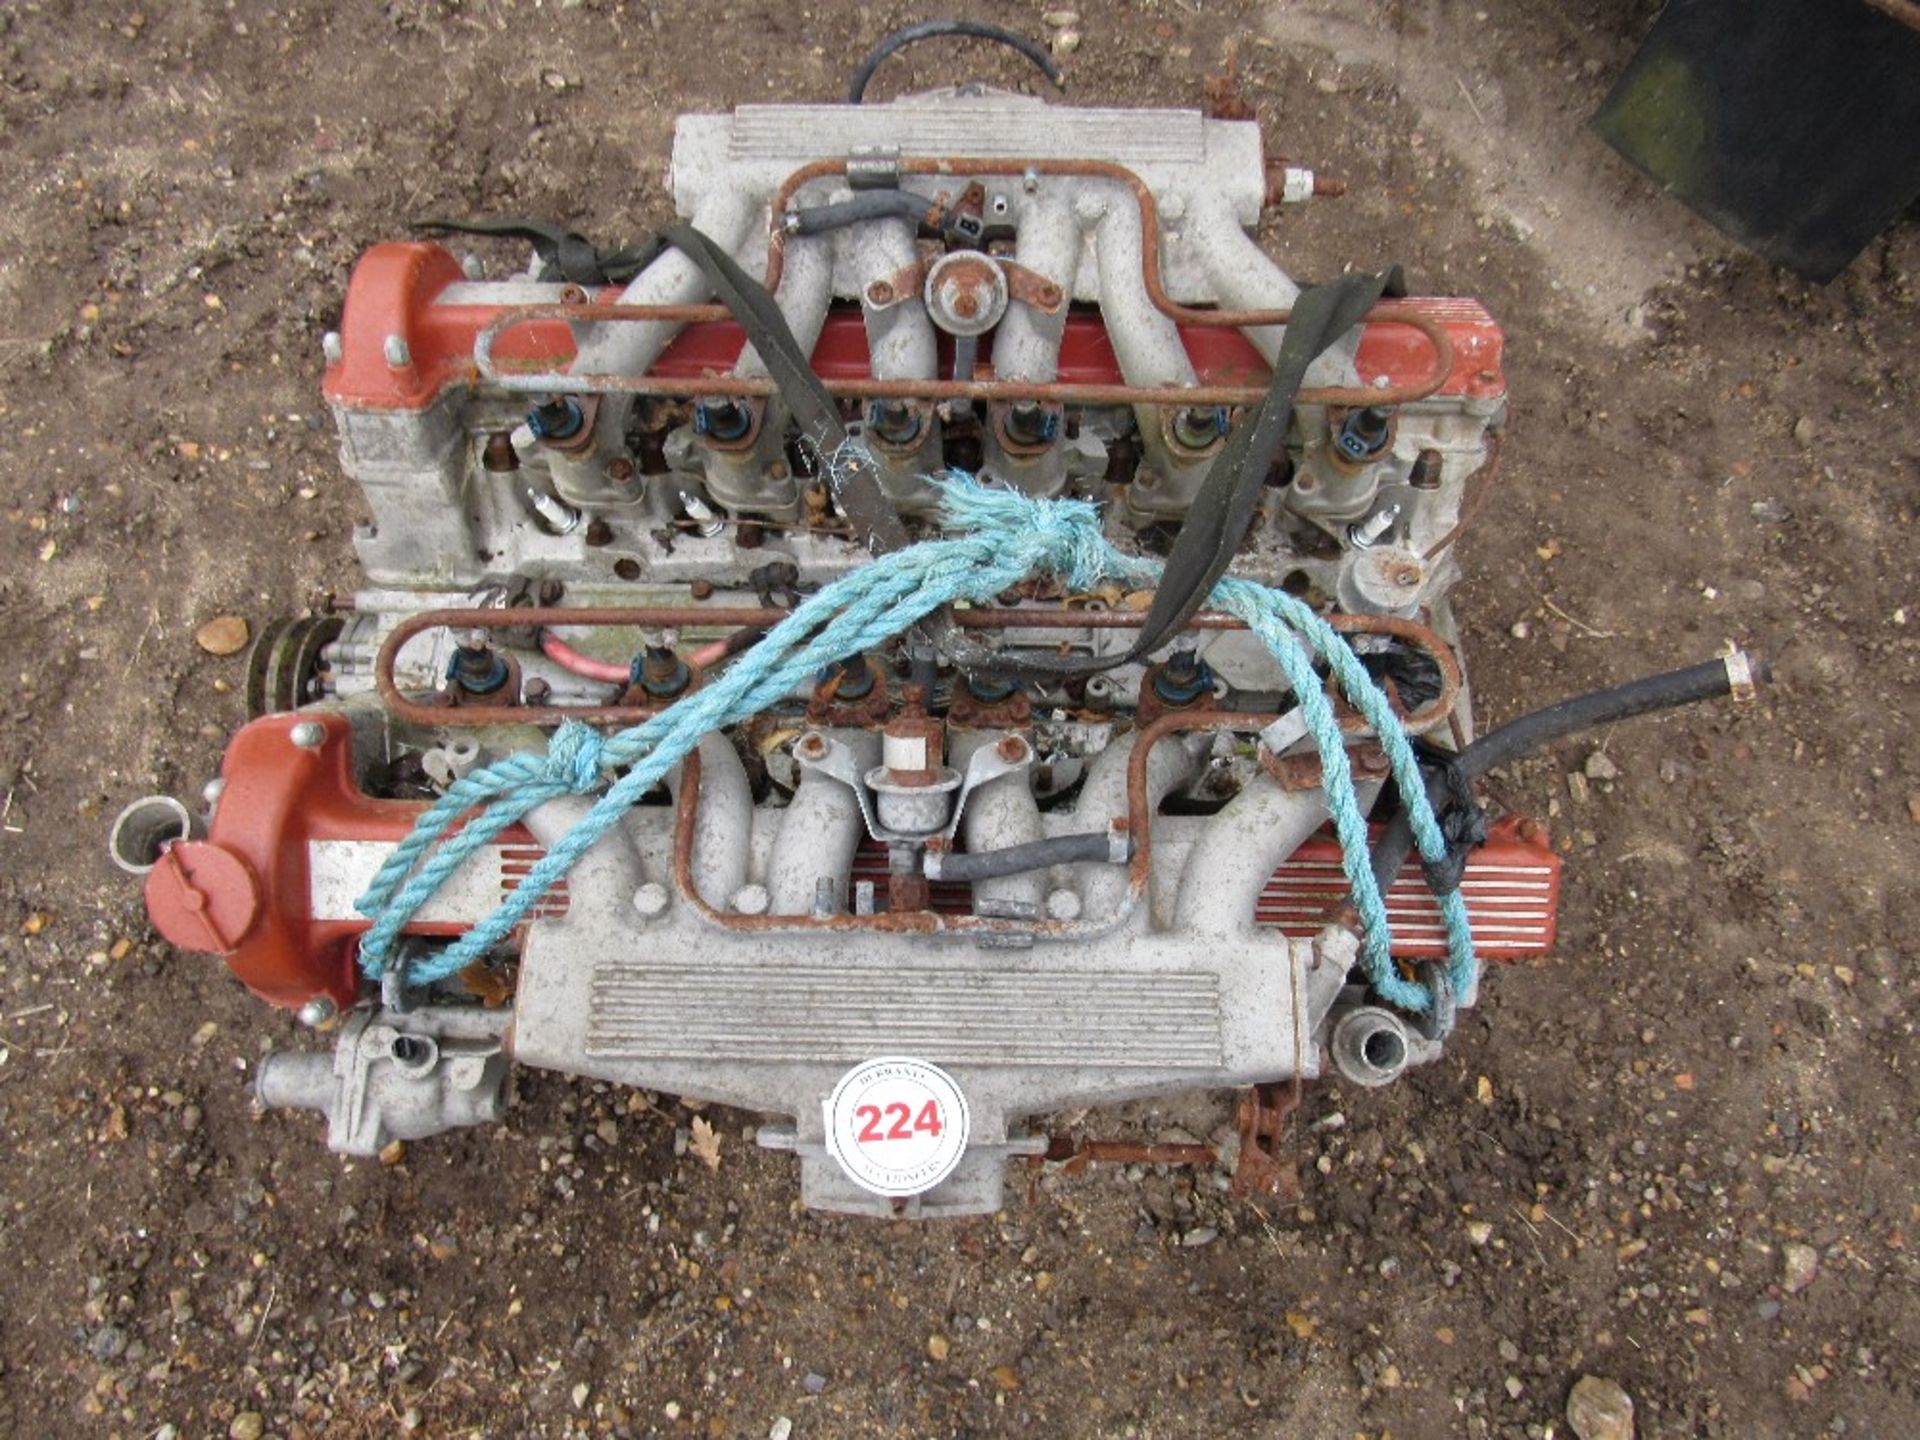 Jaguar V12 engine,